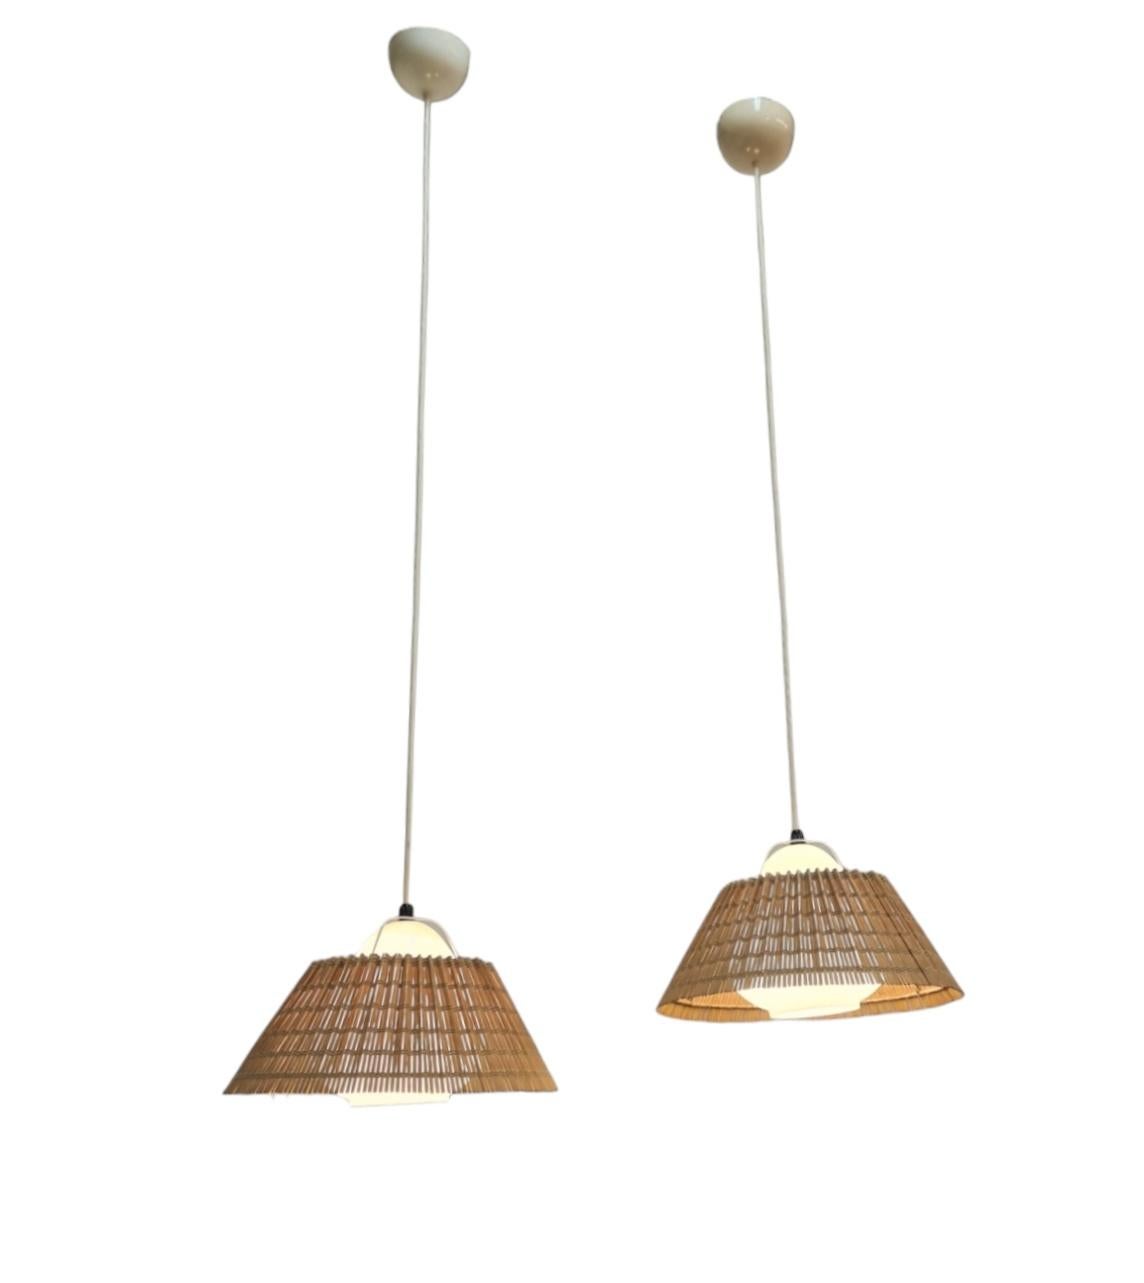 Ein schönes Paar Deckenlampen von Lisa Johansson-Papé aus den 1940er Jahren. Ein wunderschönes, organisches Design aus birnenförmigem, mundgeblasenem Opalglas mit dem originalen Rattan-Schirm. Die Lampen sind im Grunde frei hängend und werden durch